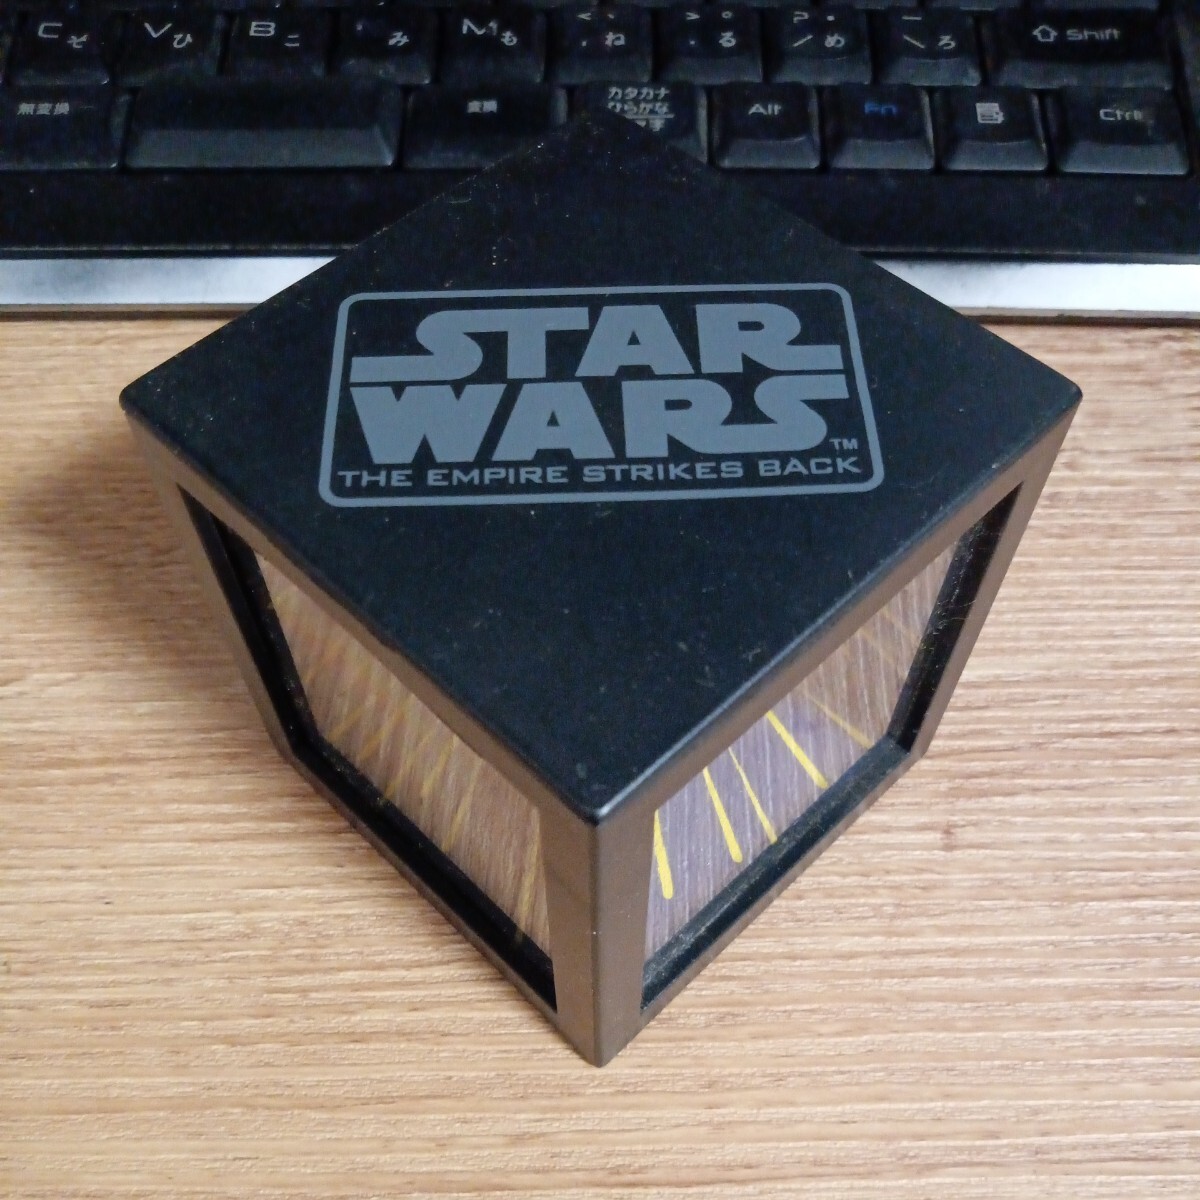  редкость Звездные войны Yoda дюжина Bay da- Magic box тонн yo- Cube SF редкость товары STARWARS 0314-..-TA9